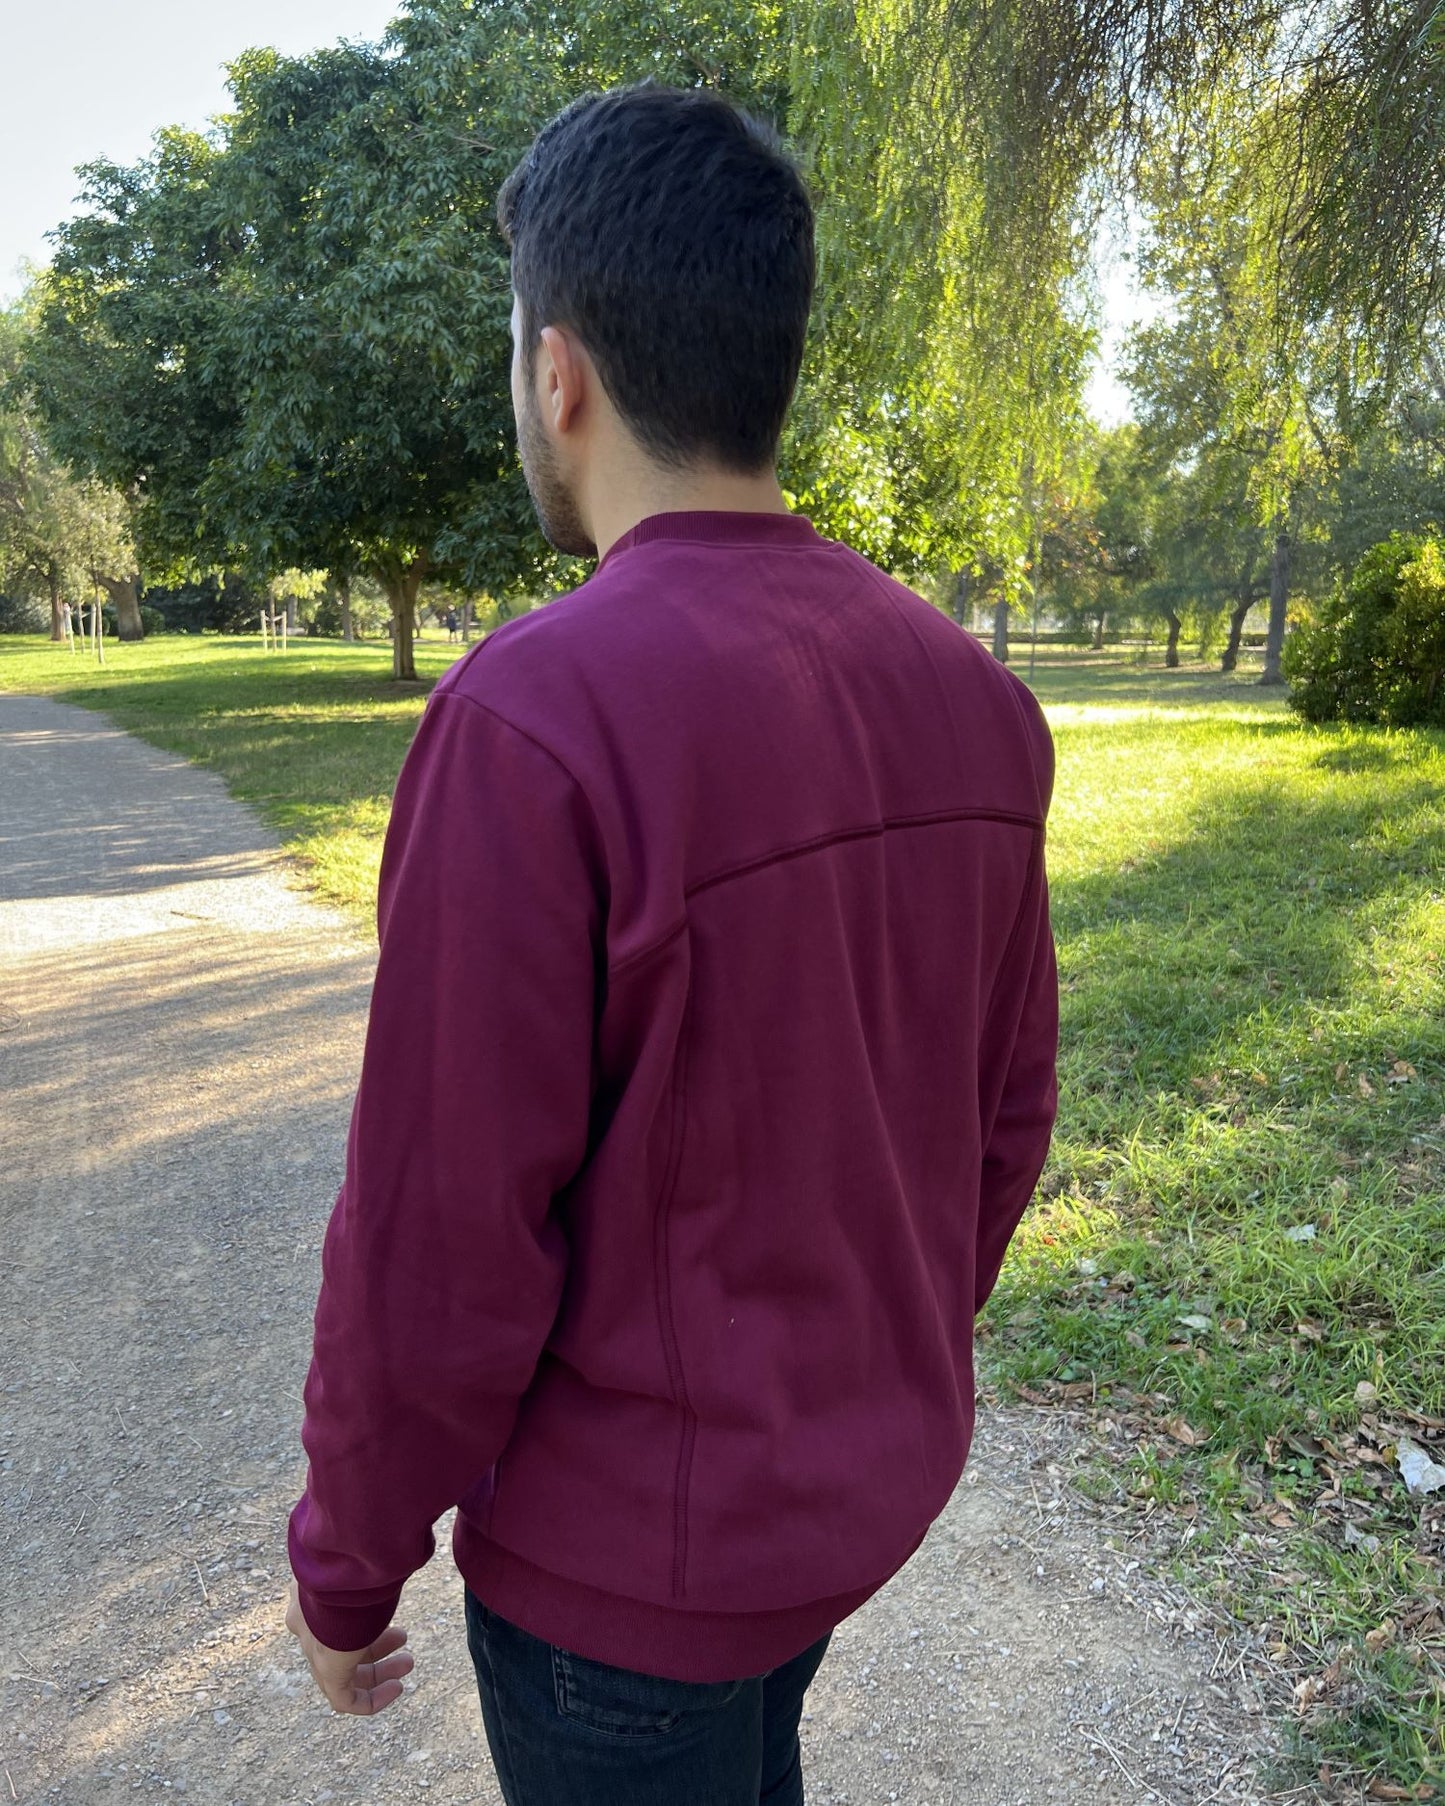 Garnet unisex backpack sweatshirt